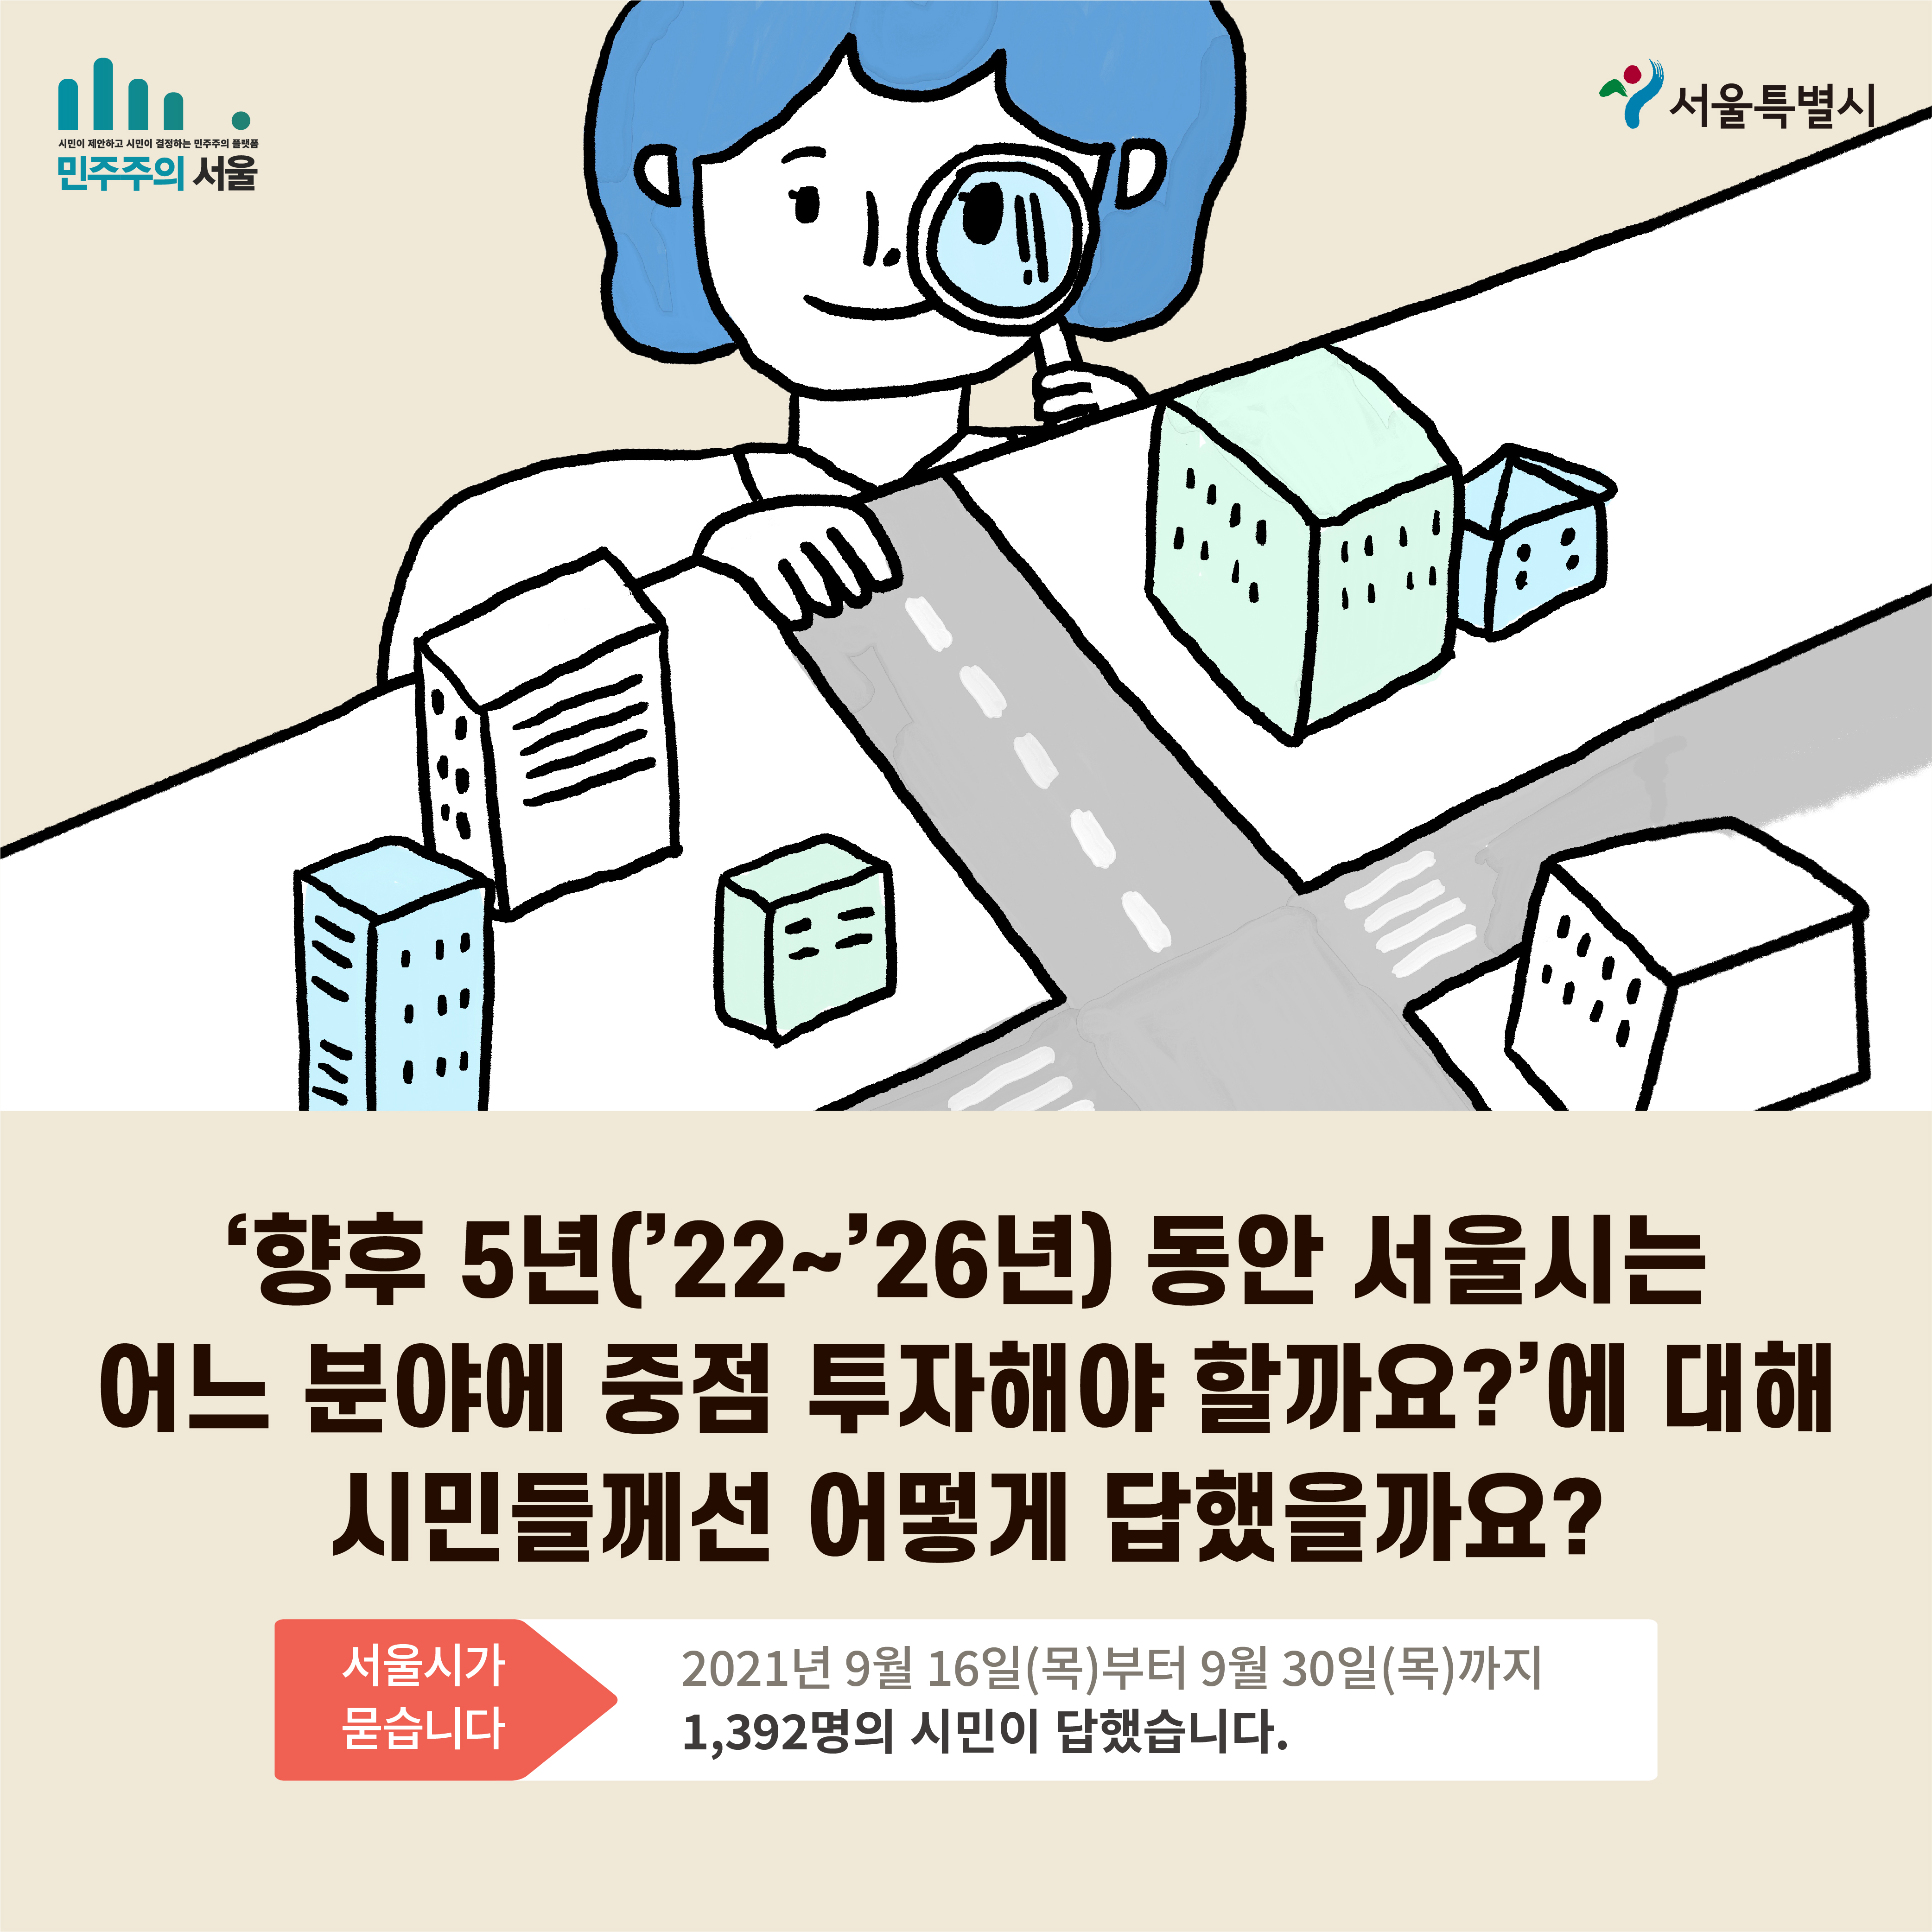 향후 5년(22~26년) 동안 서울시는 어느 분야에 중점 투자해야 할까요?에 대해 시민들께선 어떻게 답했을까요? 서울시가 묻습니다 2021년 9월 16일(목)부터 9월30일(목)까지 1,392명의 시민이 답했습니다.